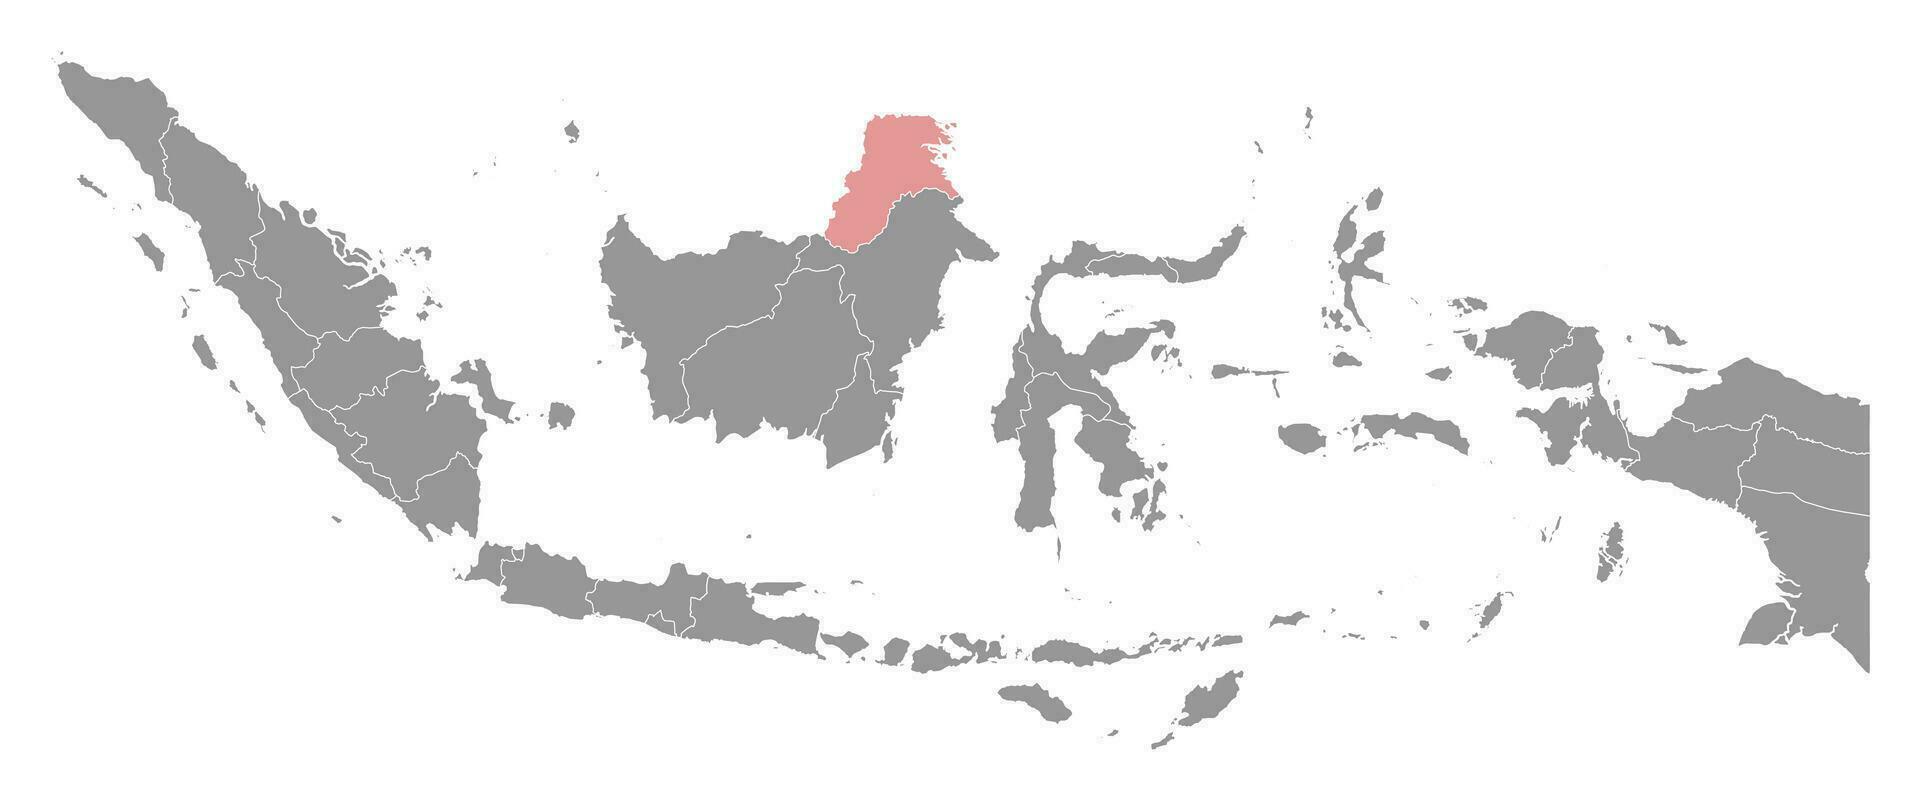 Nord kalimantan Province carte, administratif division de Indonésie. vecteur illustration.